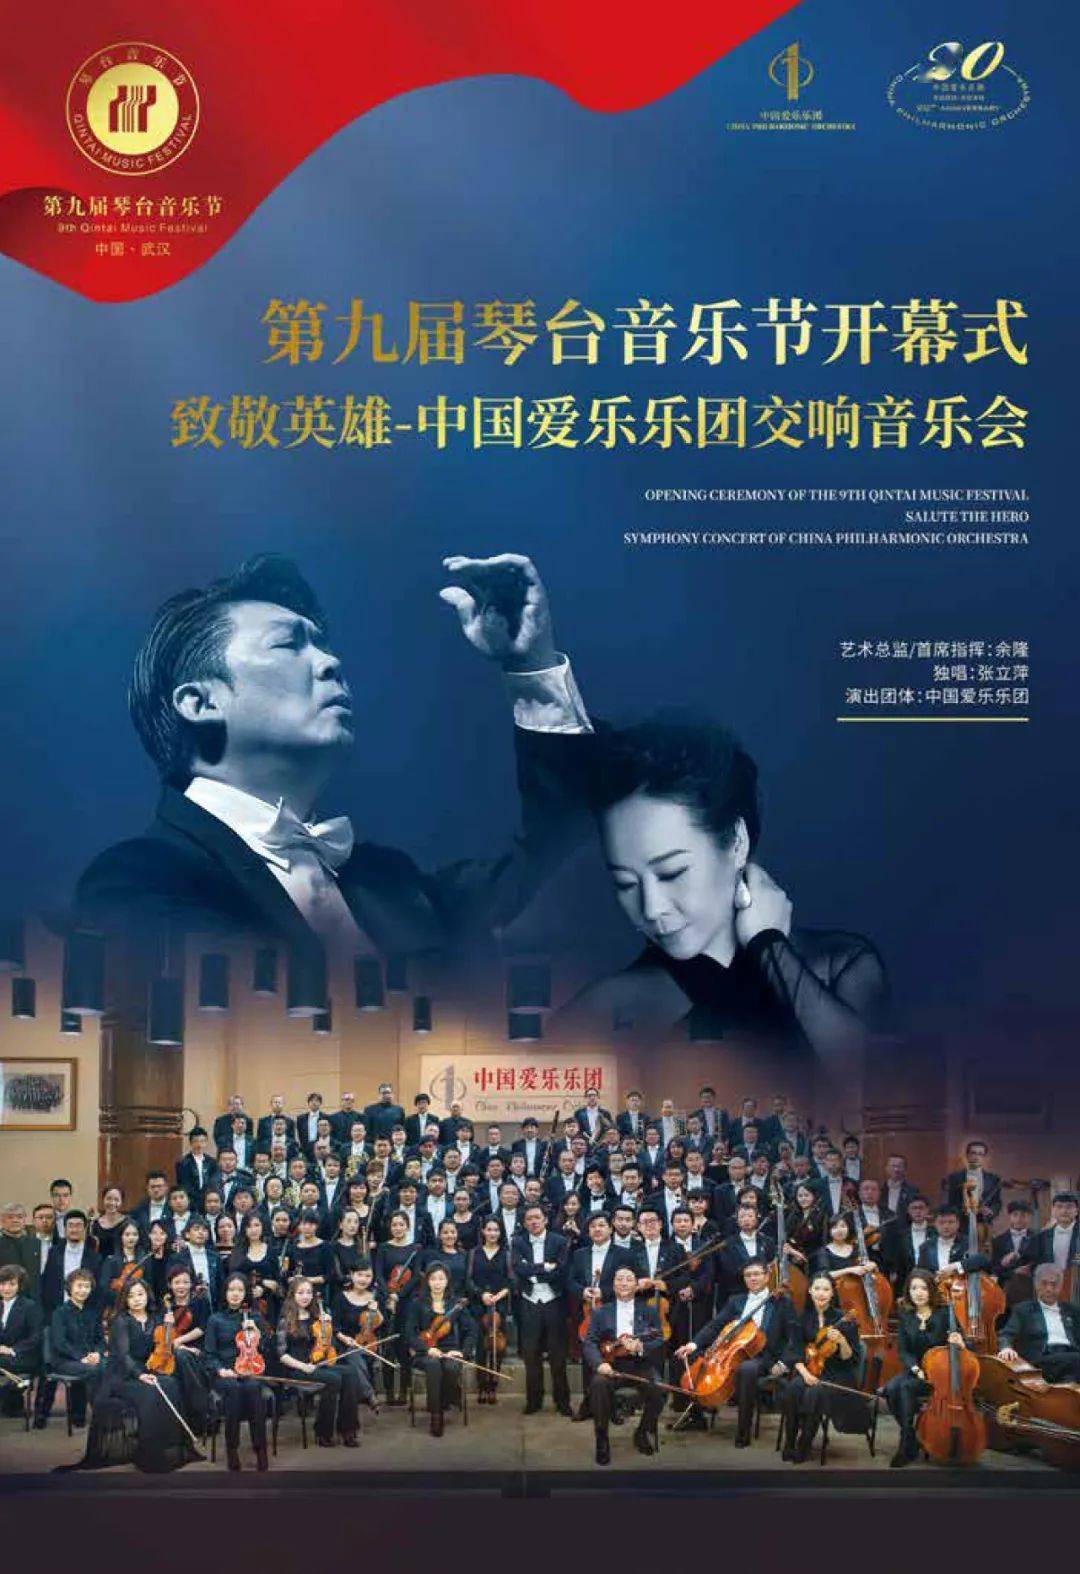 文化第九届琴台音乐节今晚启幕中国爱乐乐团致敬英雄